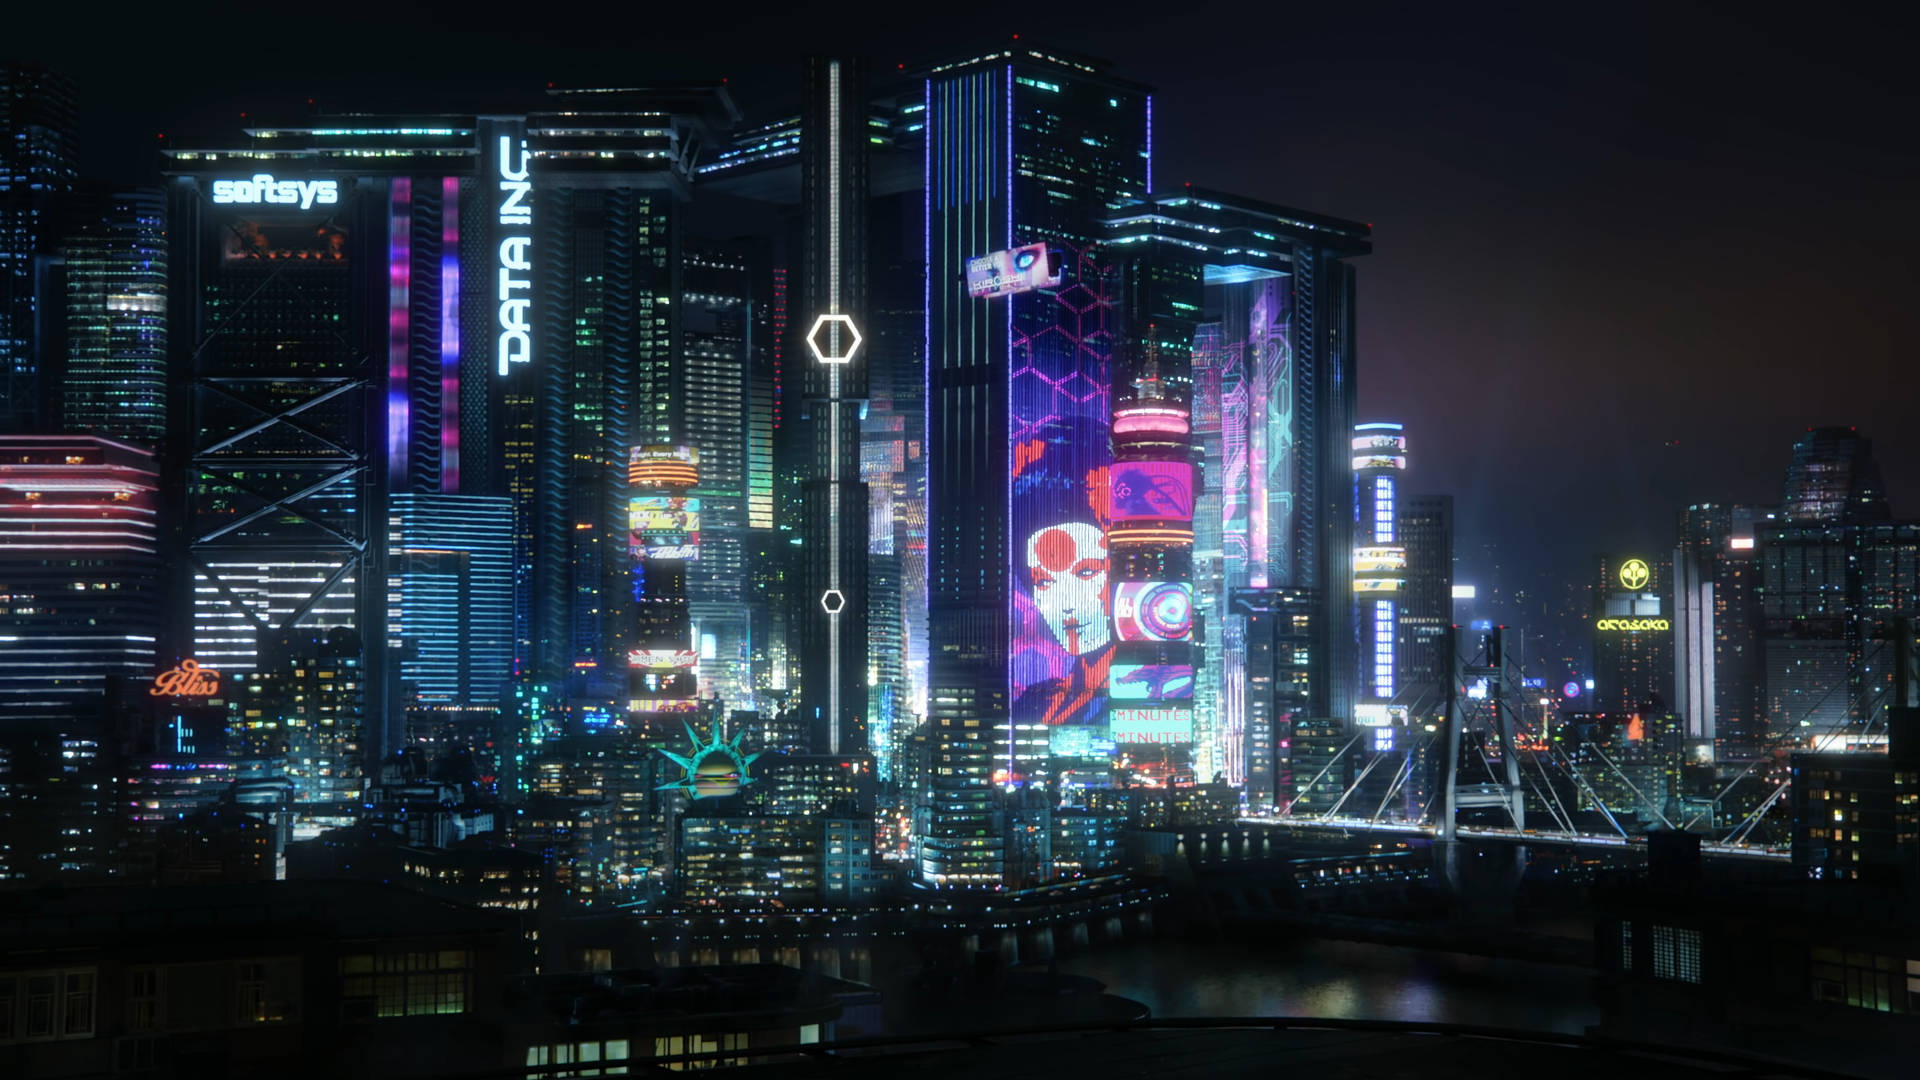 Cyberpunk 2077 Cool Night City